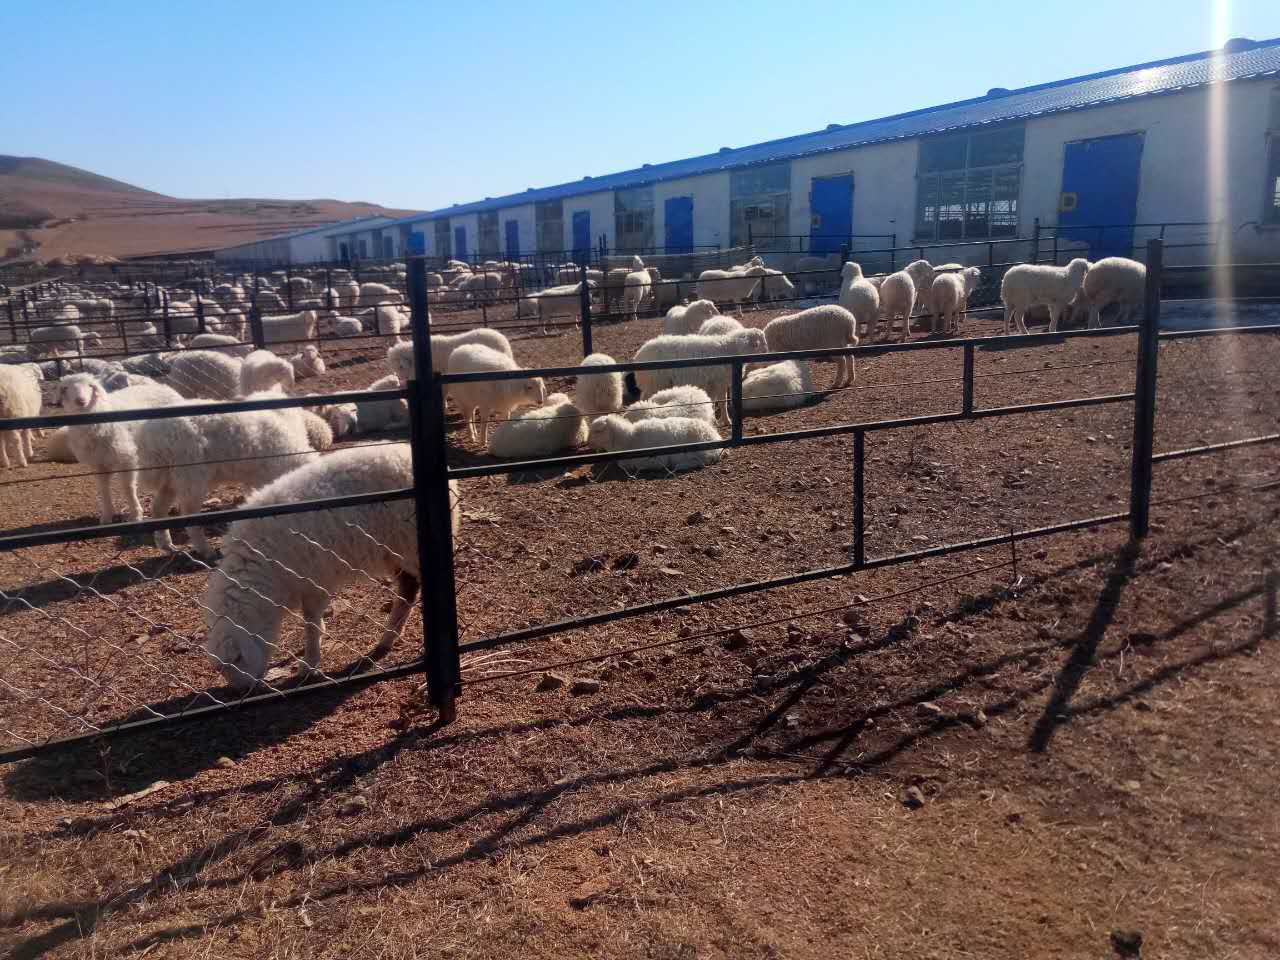 内蒙古肉羊养殖价格